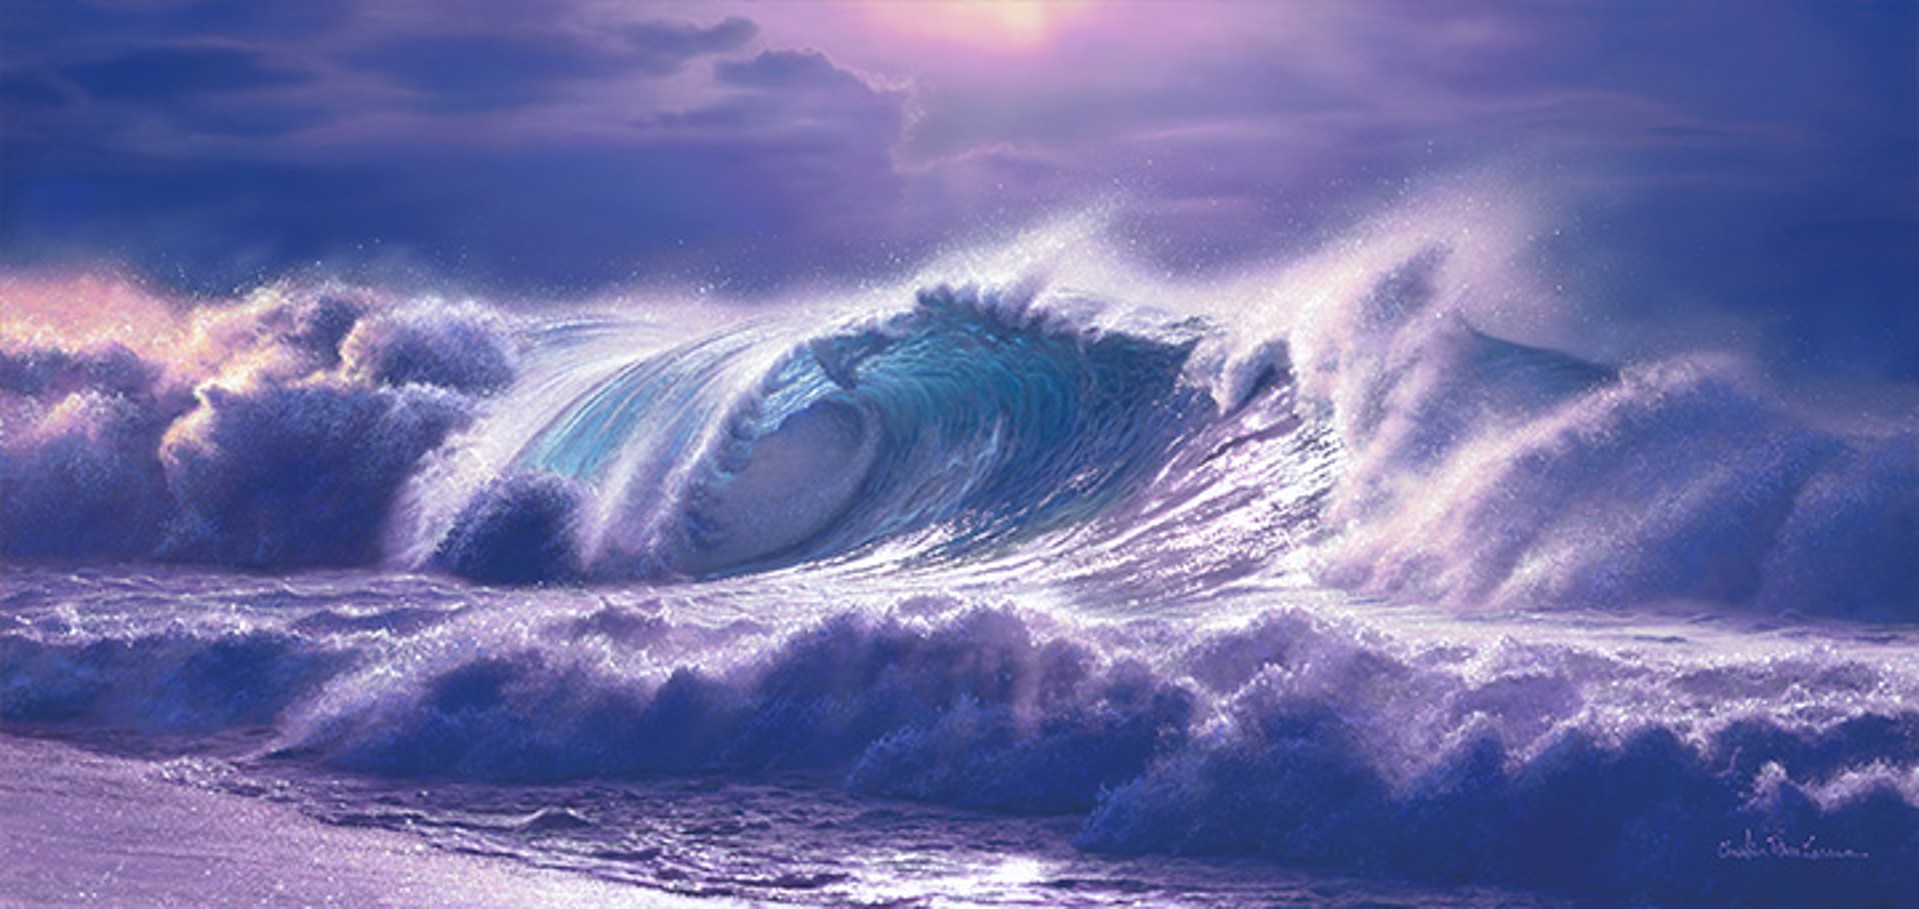 Ocean Roar by Christian Lassen